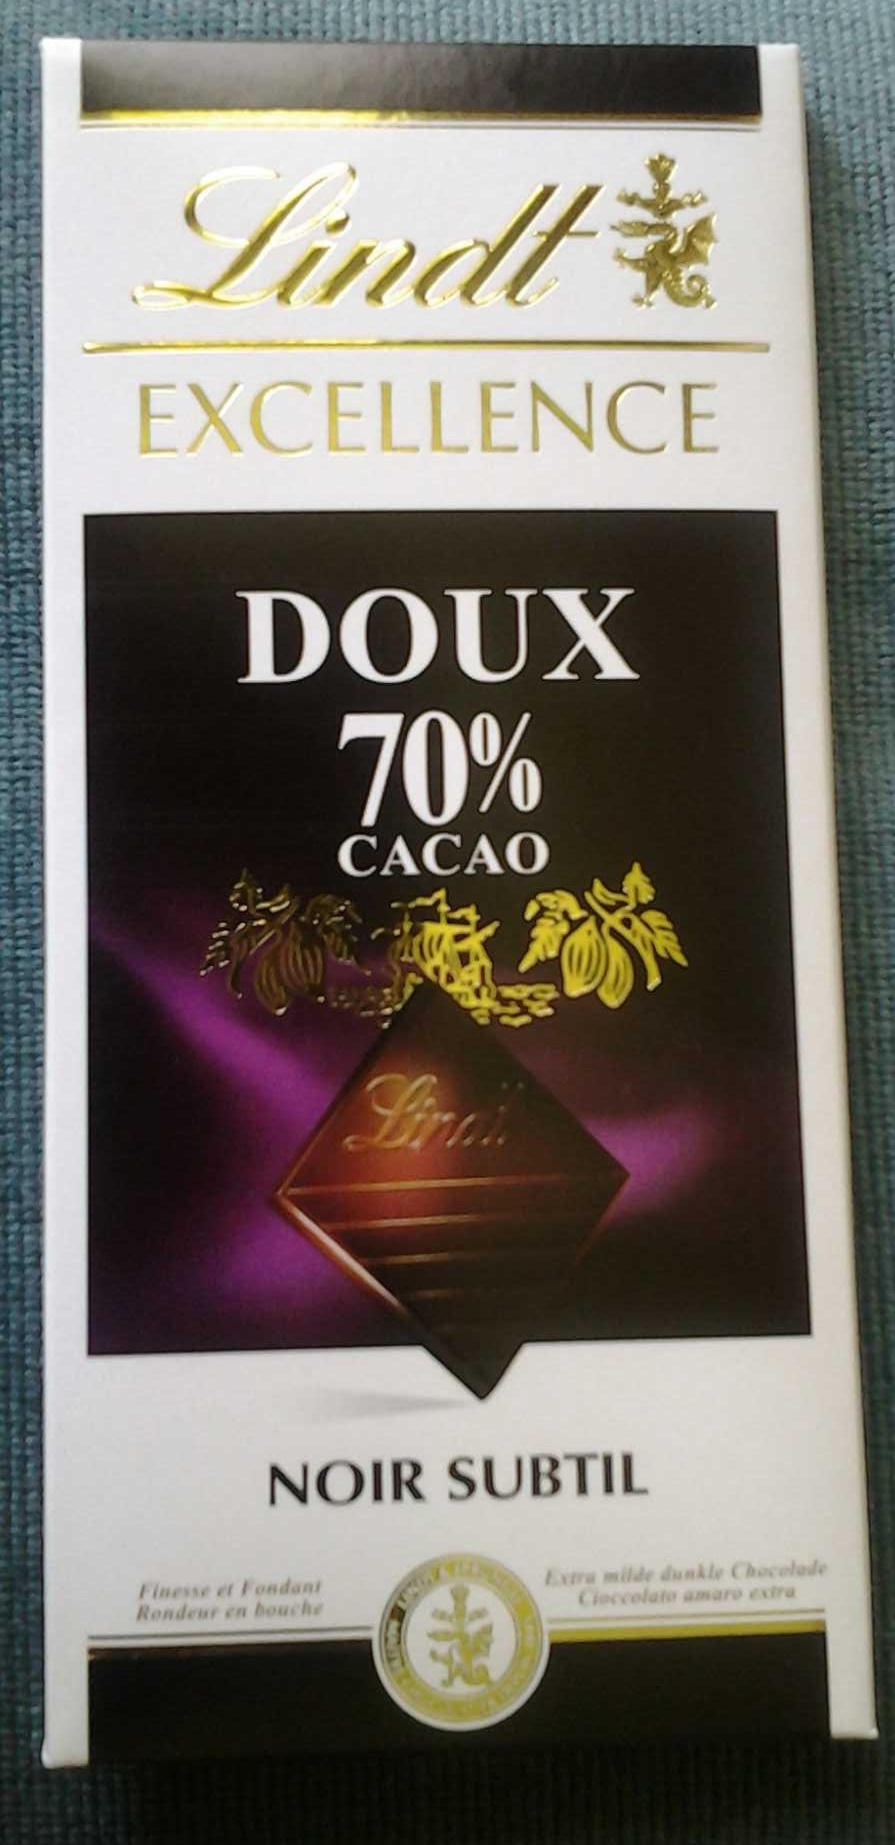 Schokolade 70% cocoa - Produit